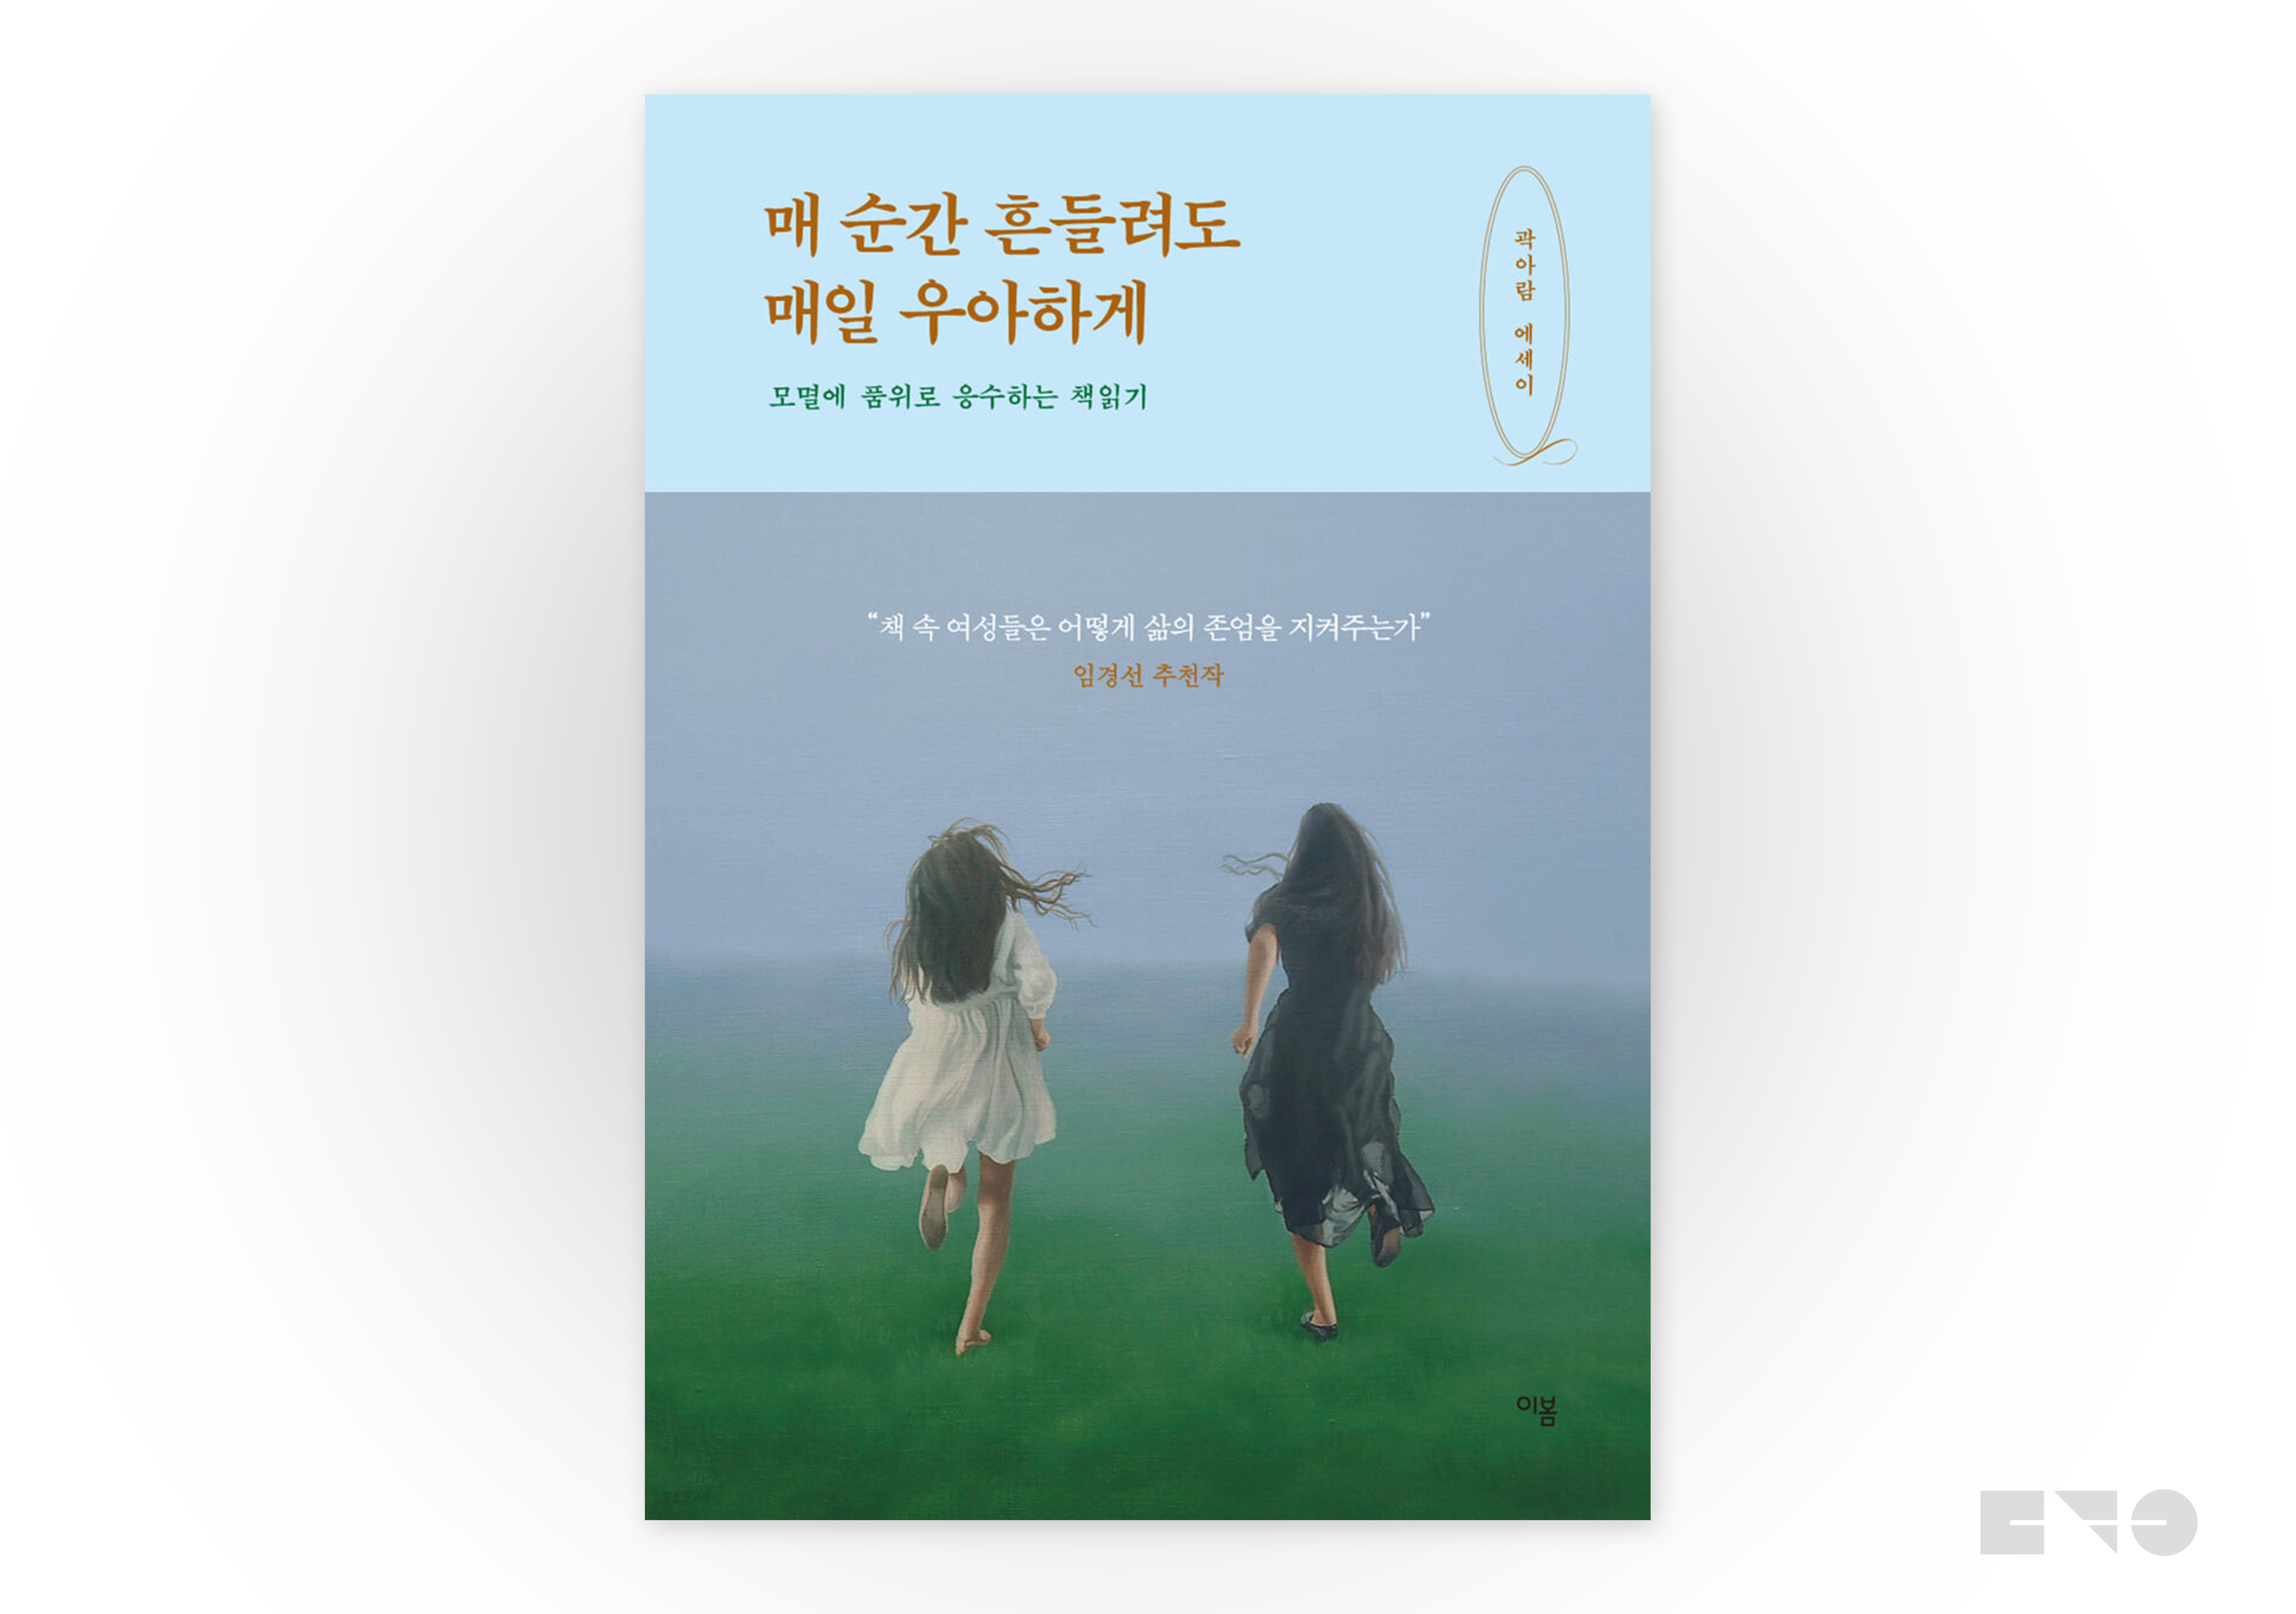 곽아람, 『매 순간 흔들려도 매일 우아하게』(이봄, 2021)에서.